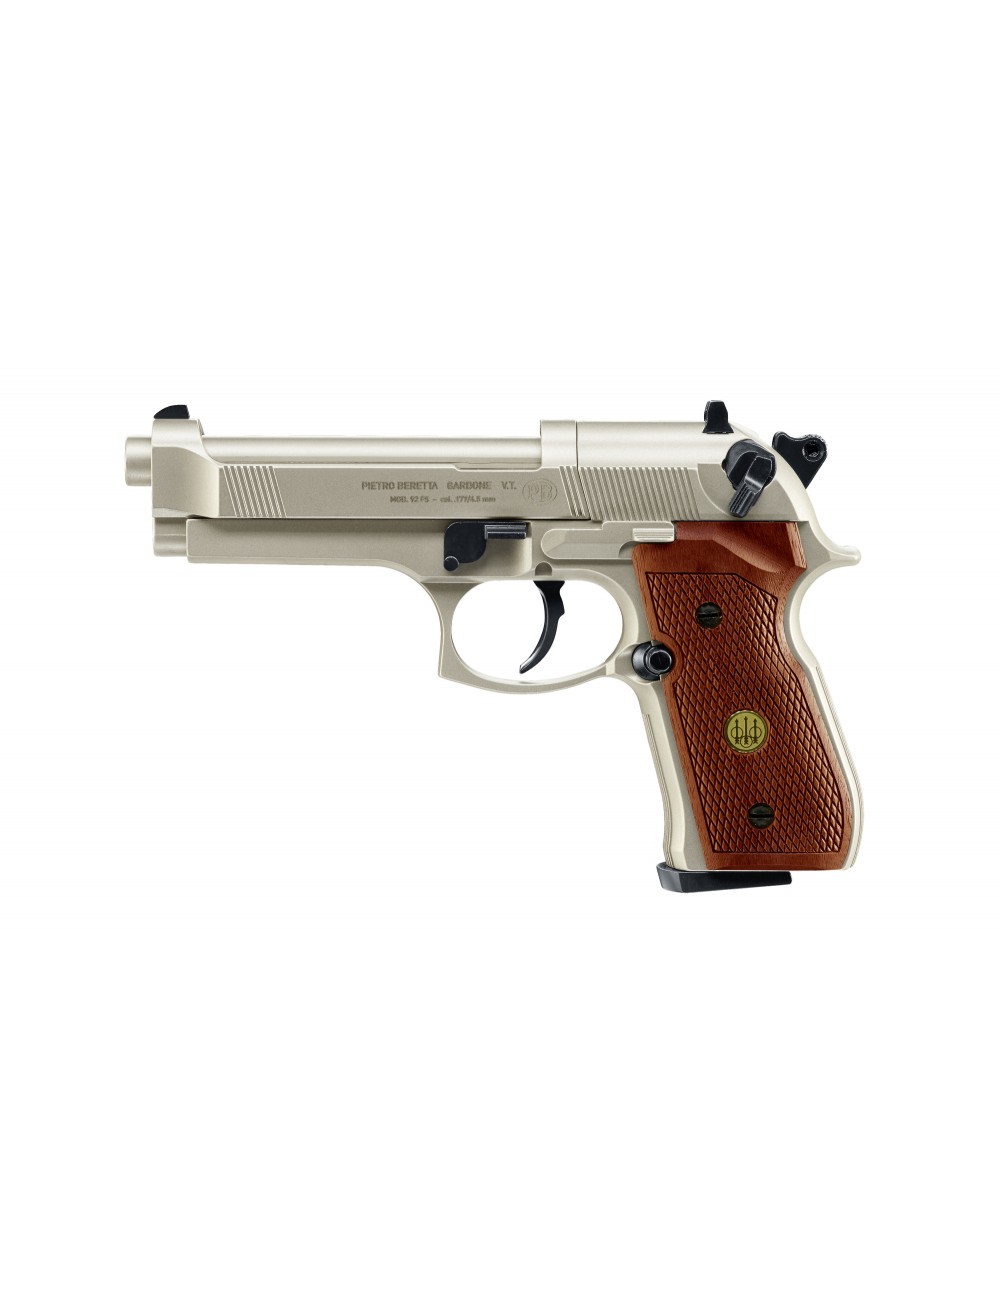 Heckler & Koch USP Pistola Eléctrica 6mm Tactical - Armas de Colección